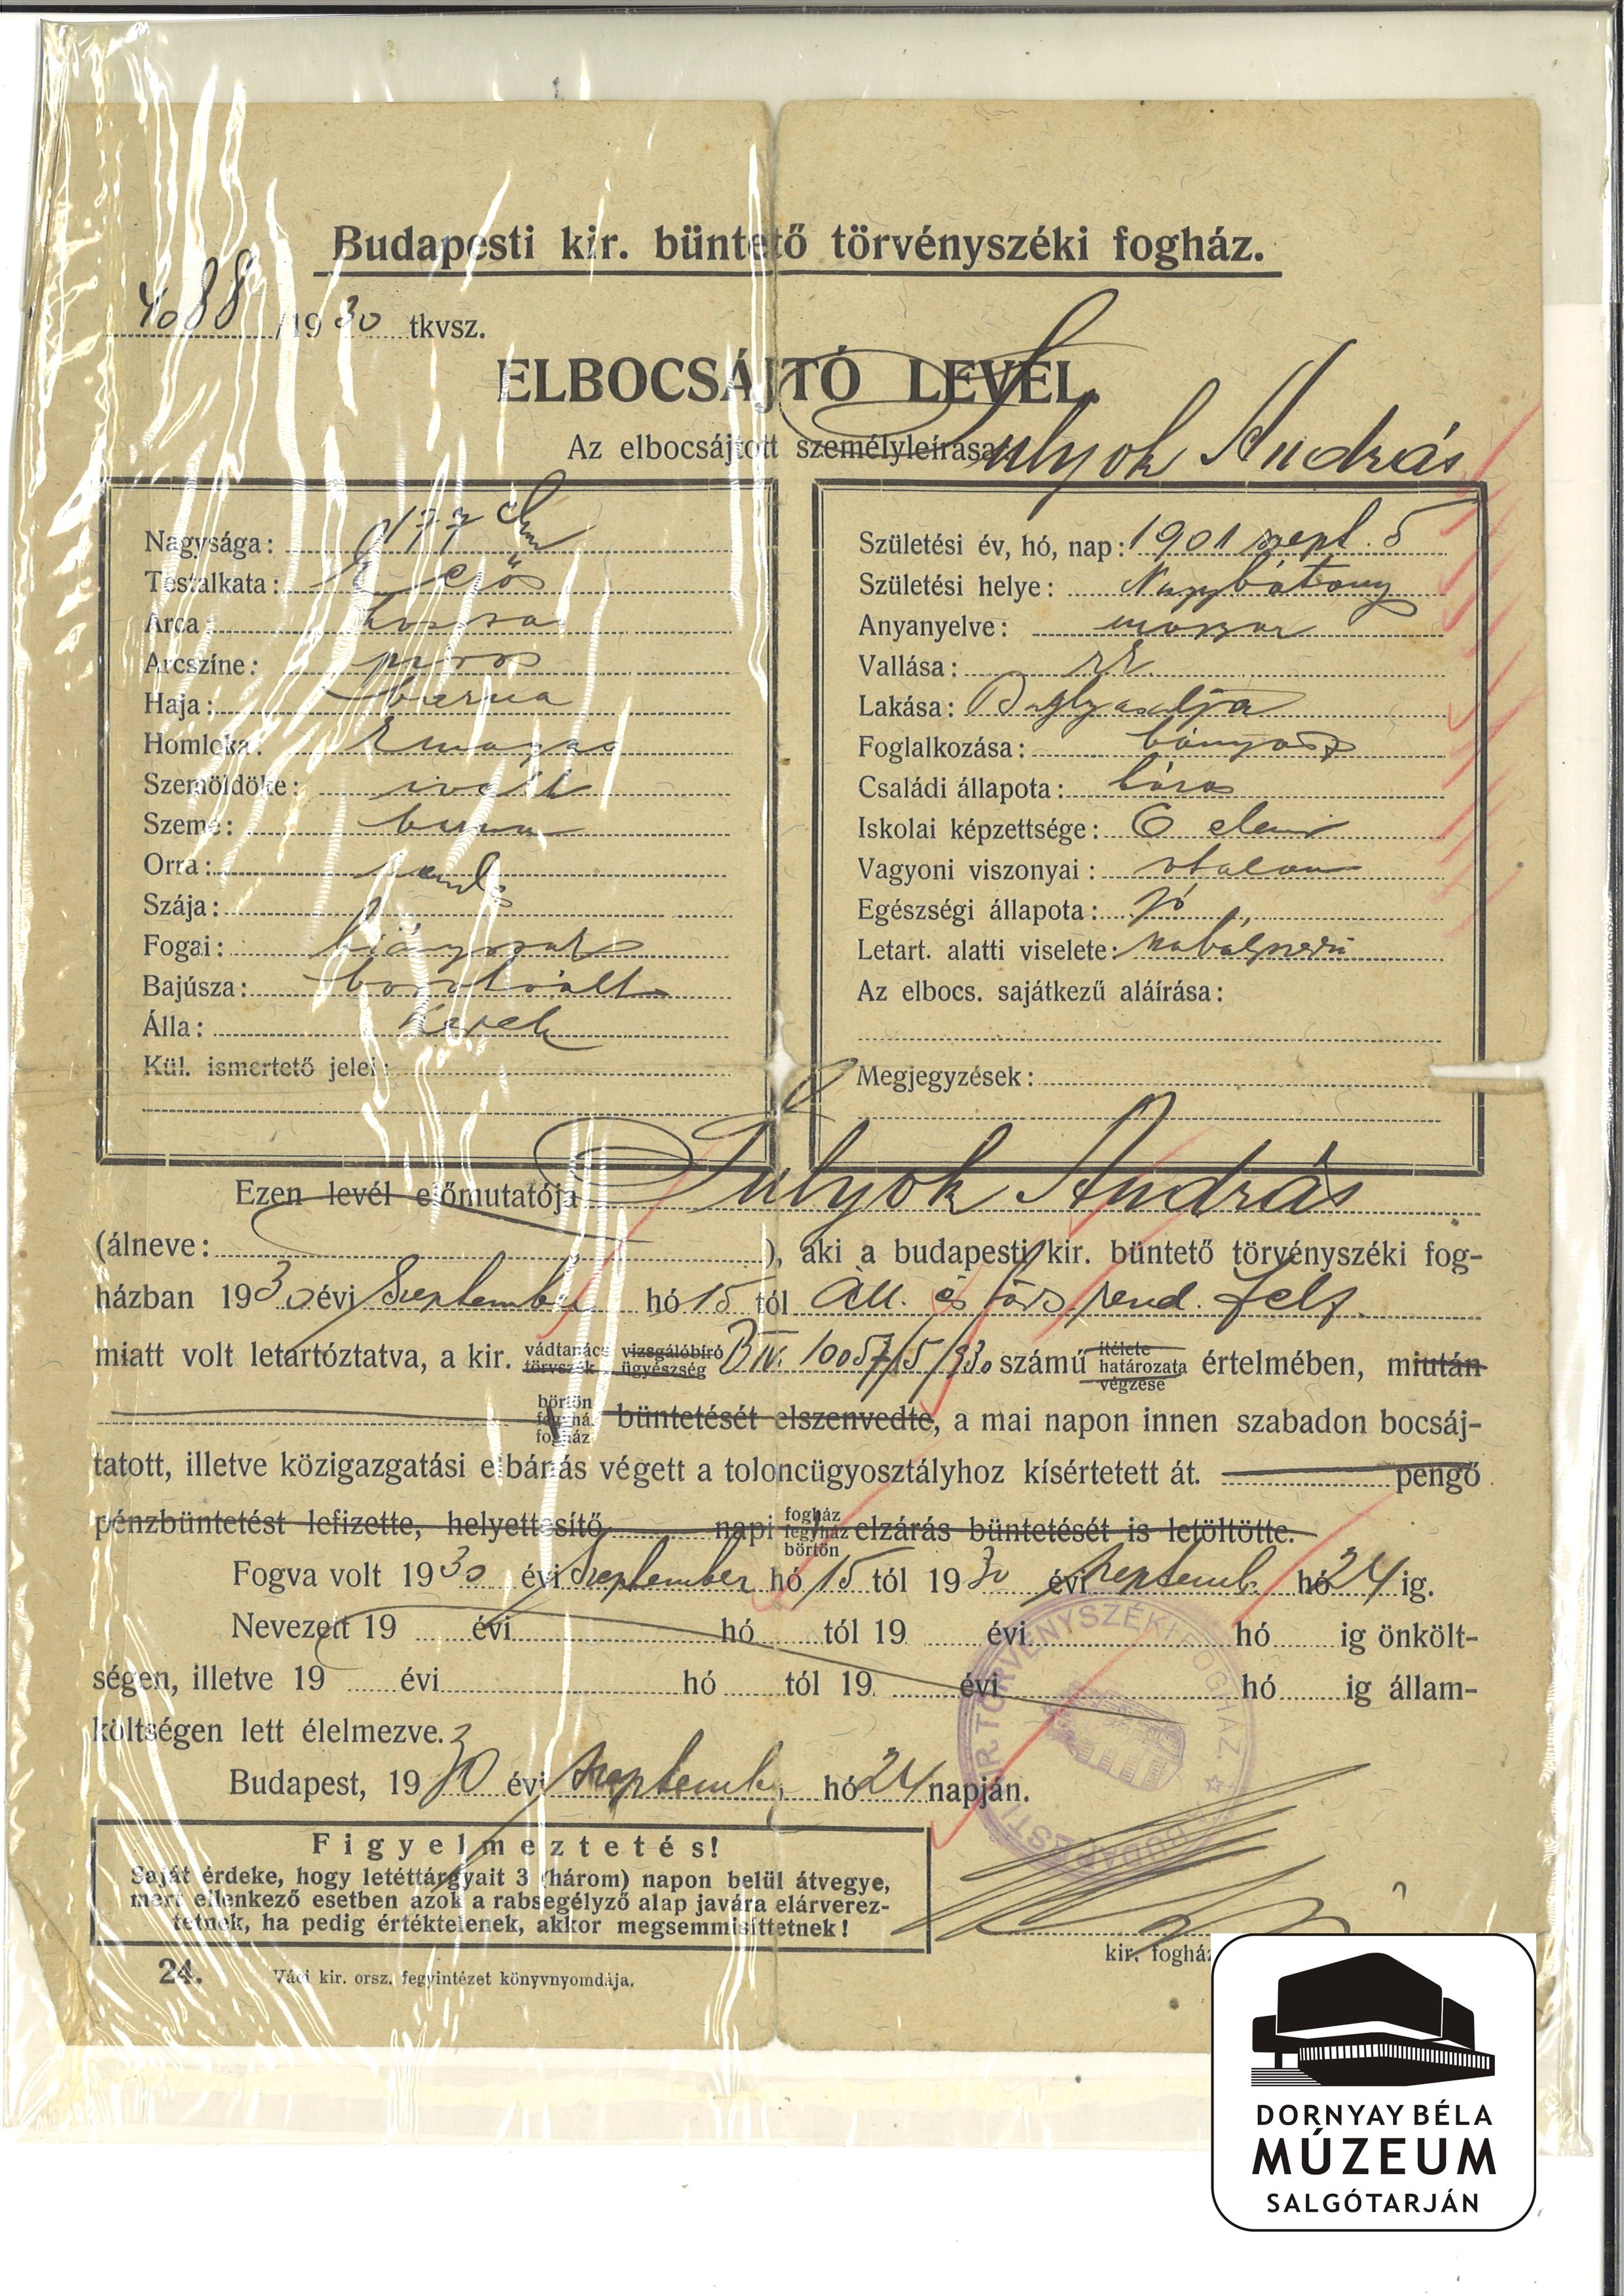 Sulyok András baglyasi lakos elbocsátó levele a budapesti fogházból (Dornyay Béla Múzeum, Salgótarján CC BY-NC-SA)